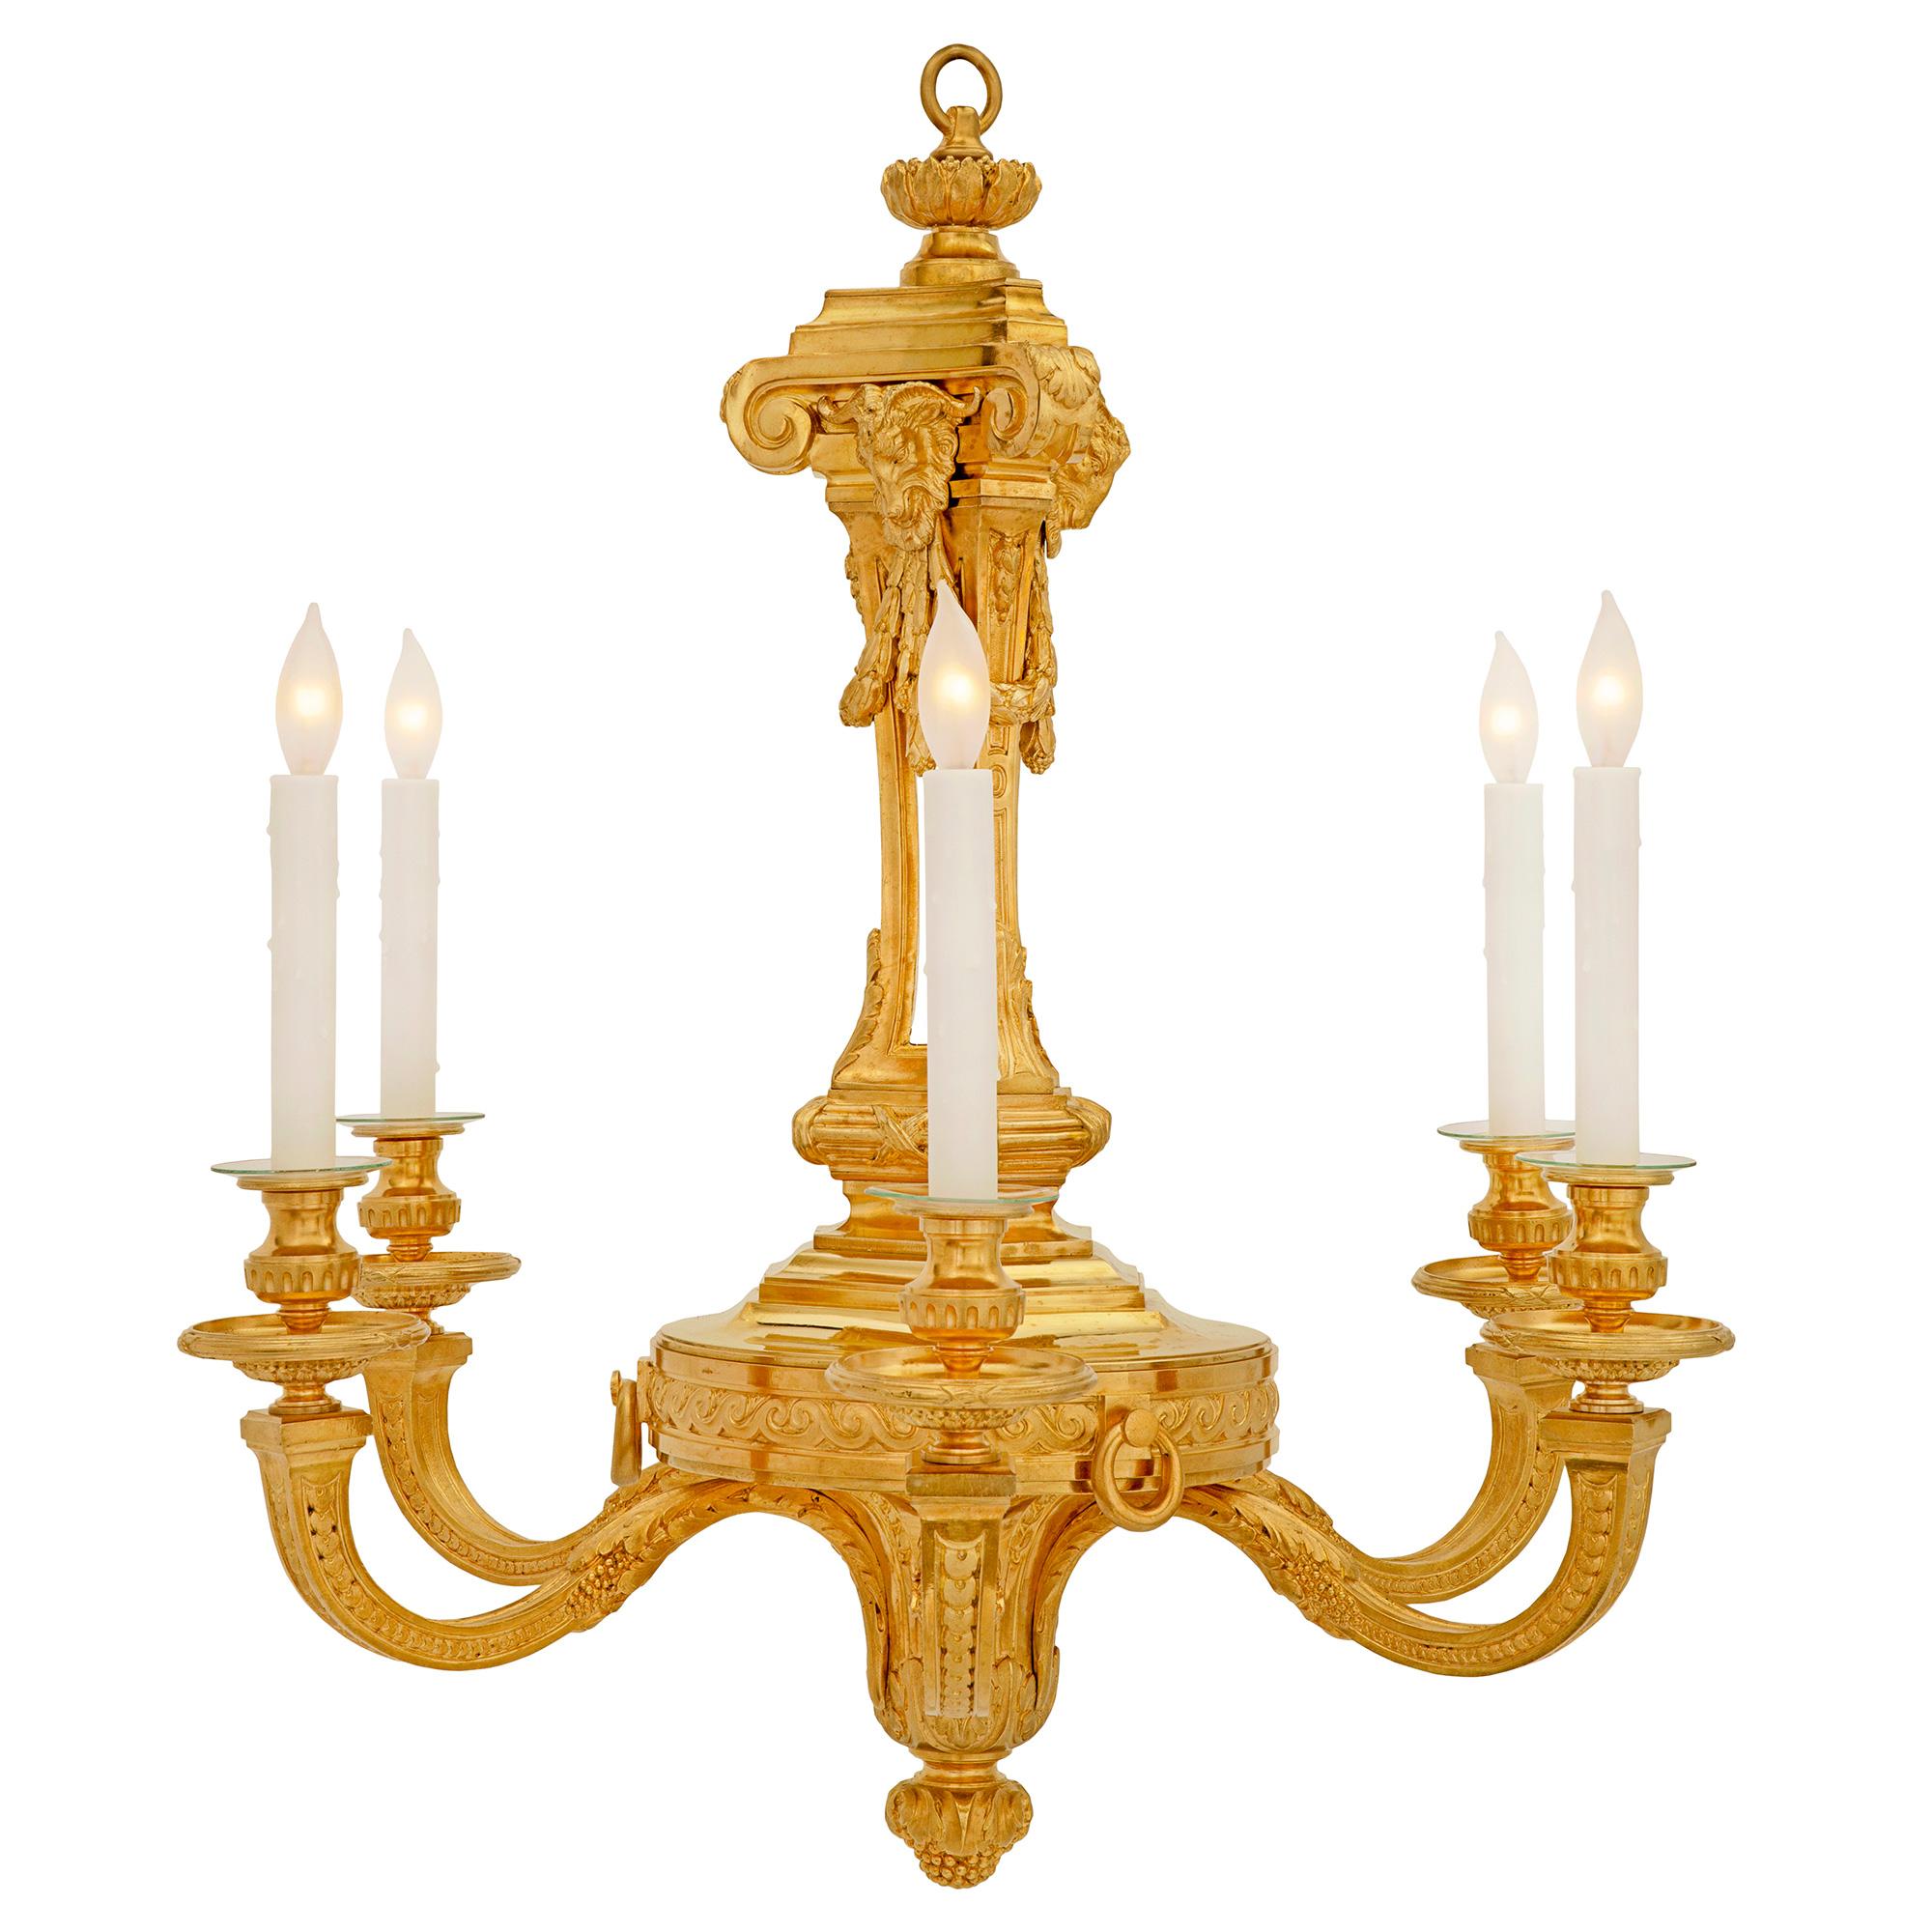 Un très beau lustre français du 19ème siècle, de style Louis XVI, en bronze doré. Le lustre à six bras est centré par un superbe épi de faîtage avec de grandes feuilles d'acanthe enroulées. Chaque élégant bras à volutes en 